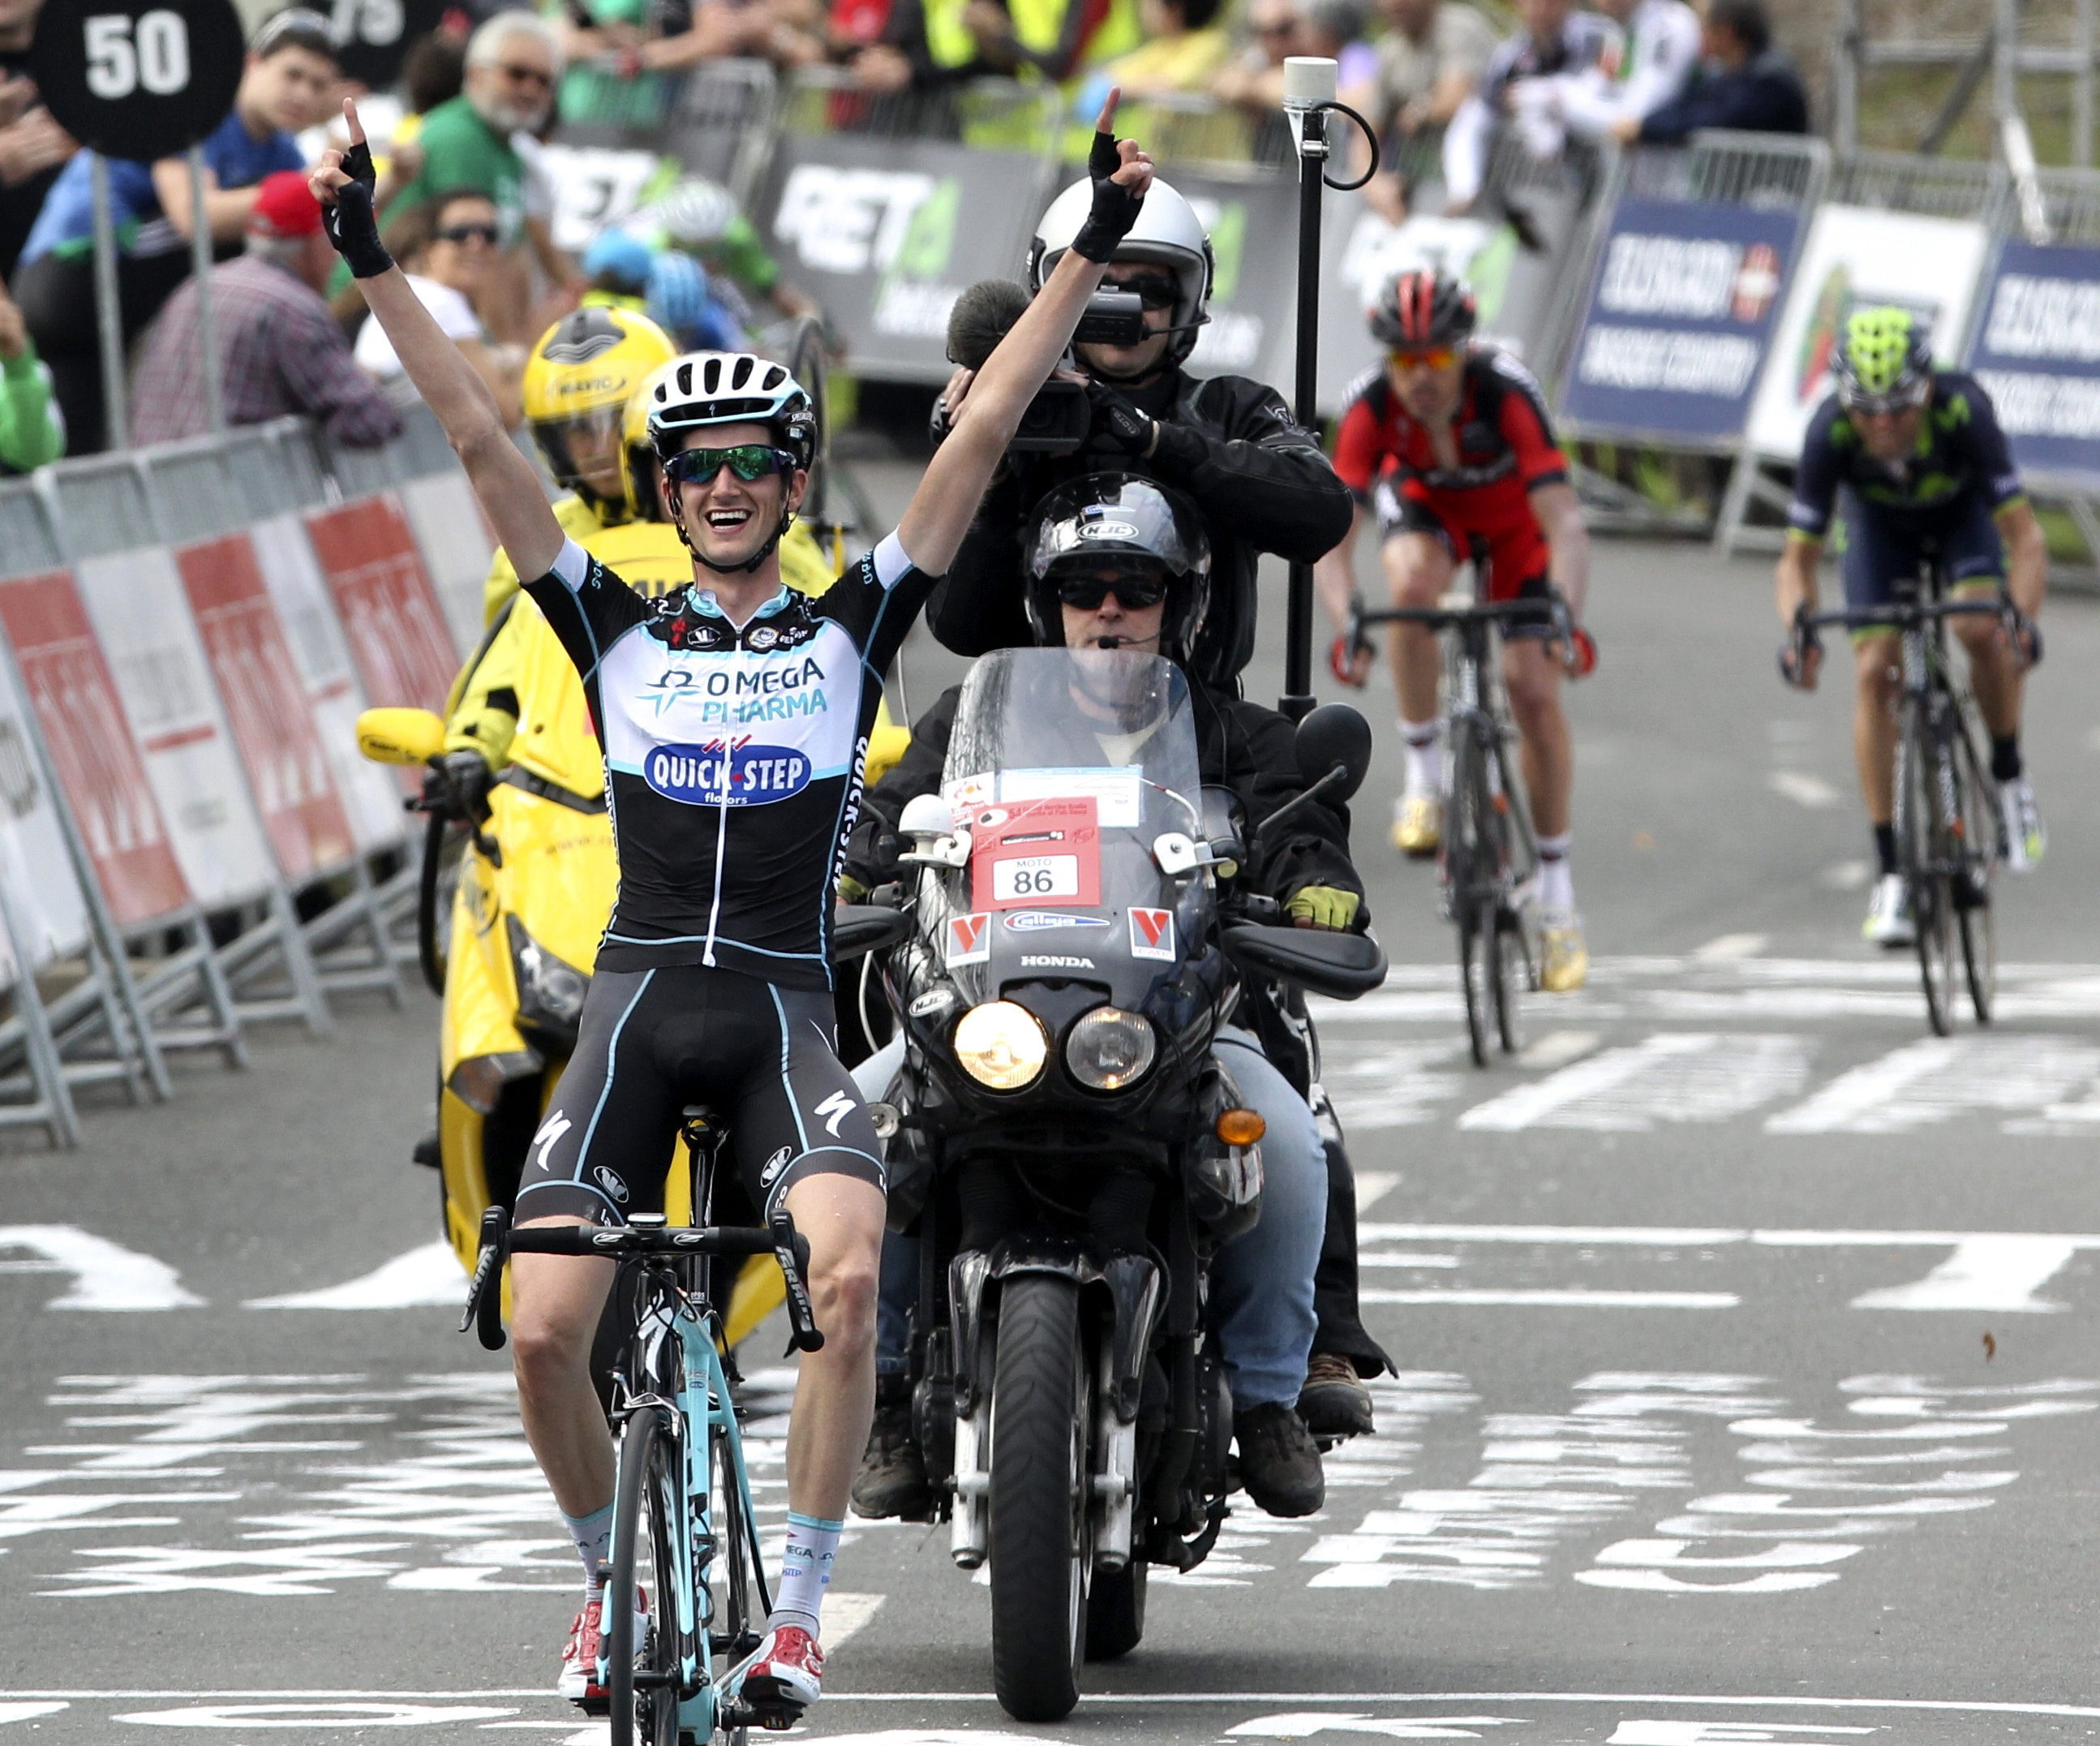 El holandés Poels aprovecha el marcaje Contador-Valverde para ganar en Arrate